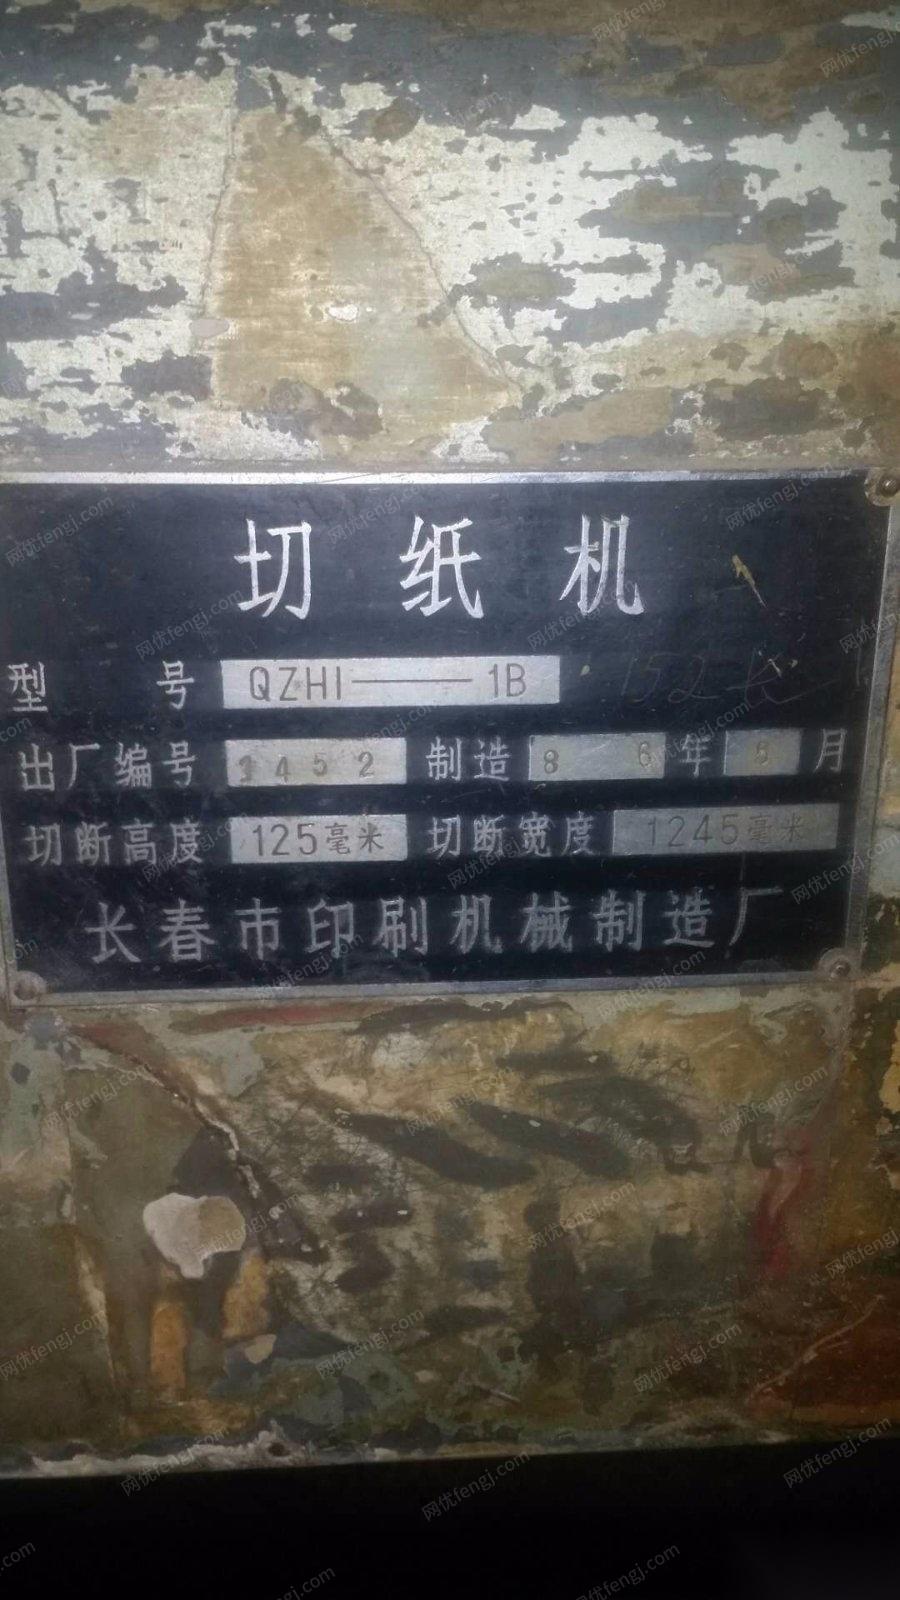 辽宁沈阳长春市印刷机械厂切纸机出售看货议价.